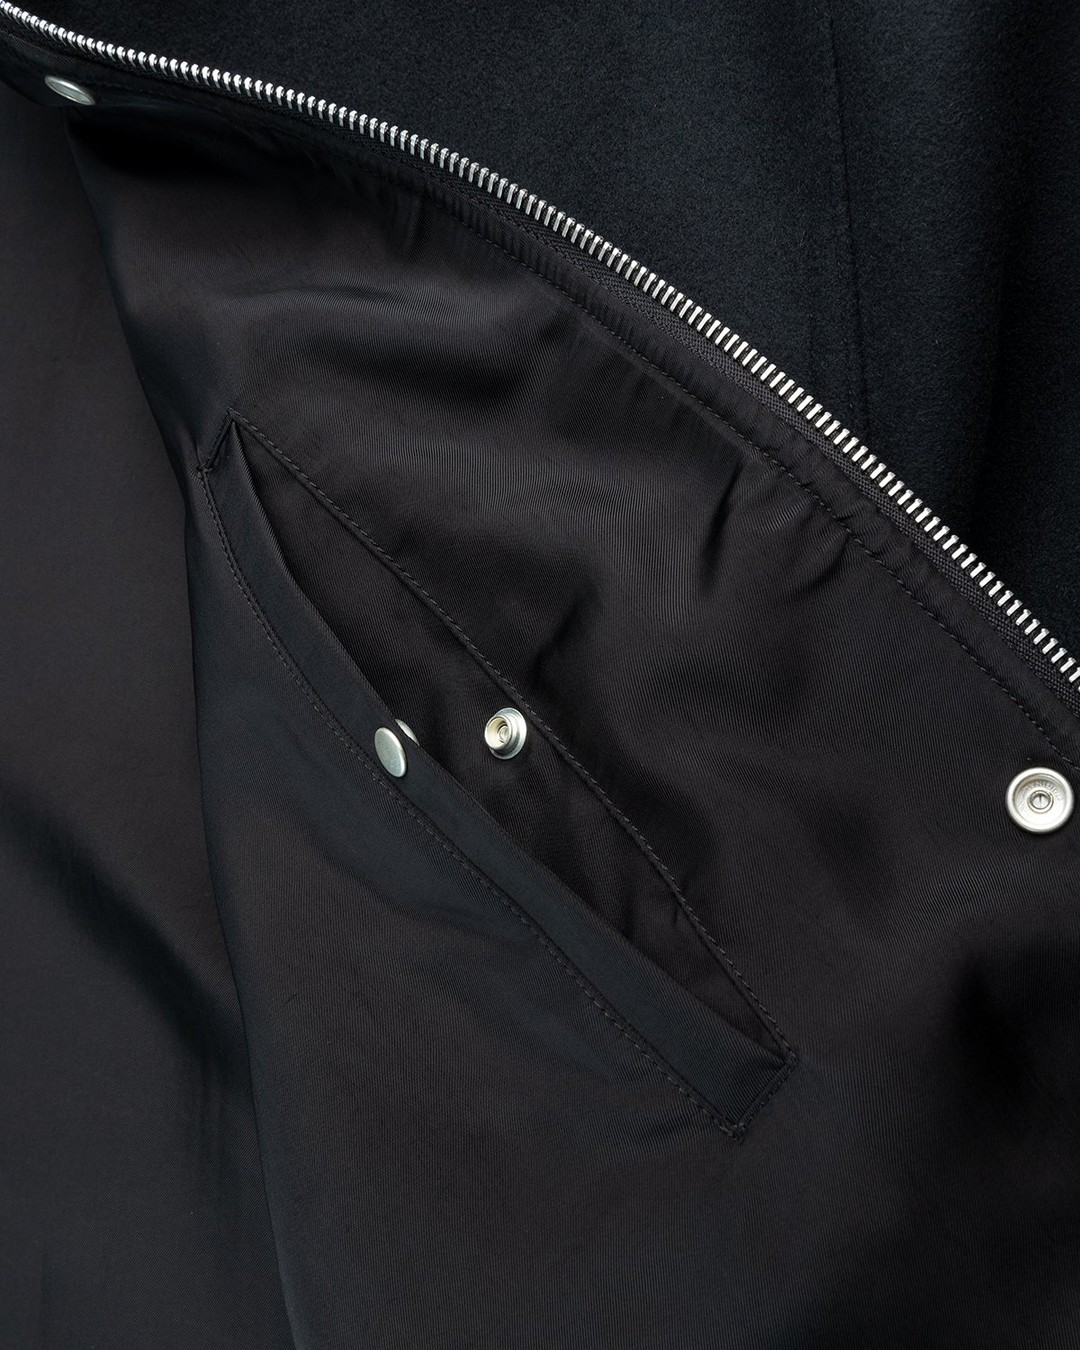 Jil Sander – Blouson Black - Outerwear - Black - Image 4